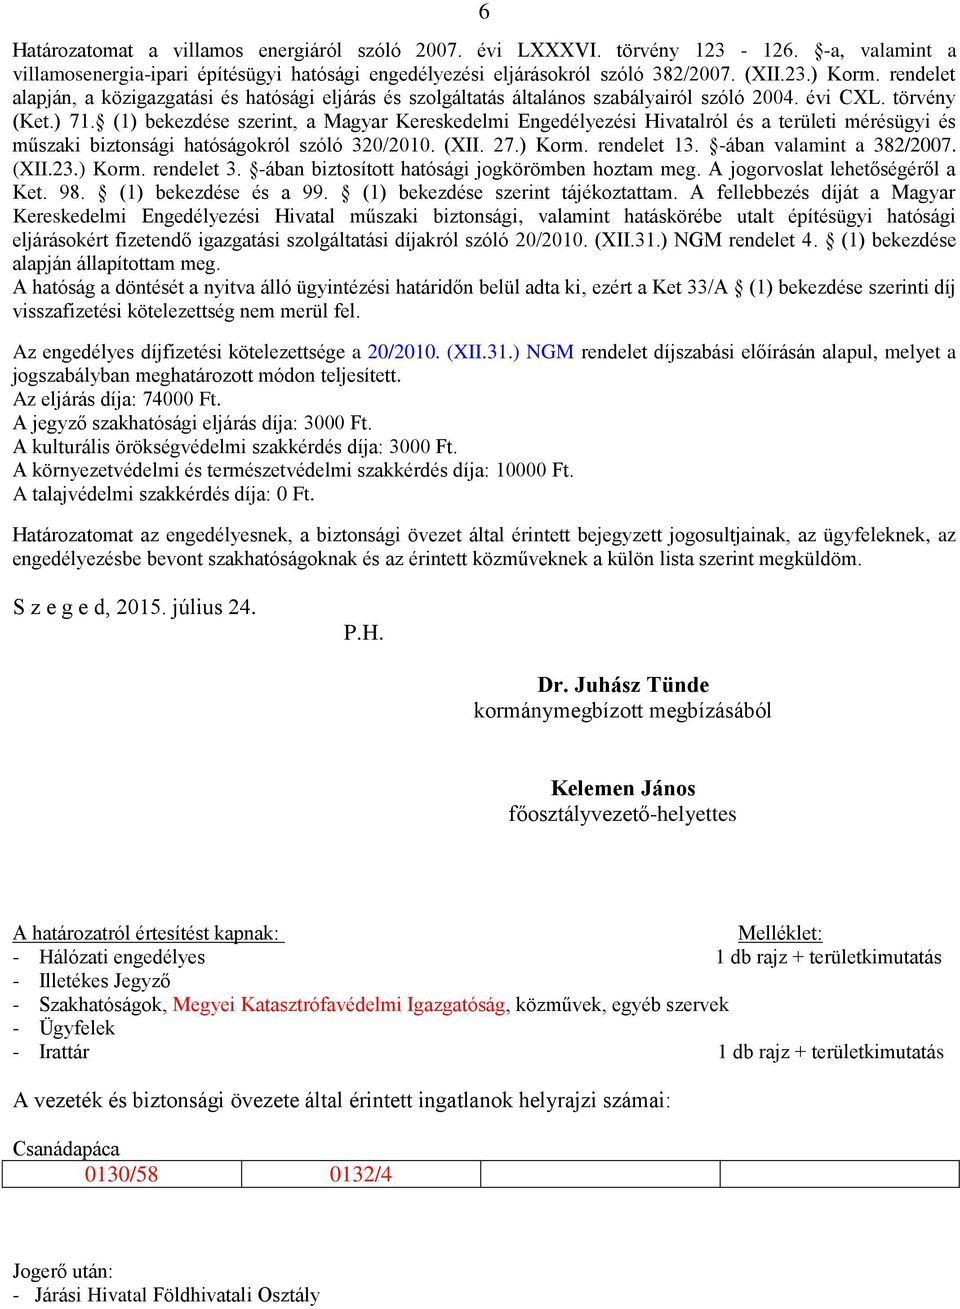 (1) bekezdése szerint, a Magyar Kereskedelmi Engedélyezési Hivatalról és a területi mérésügyi és műszaki biztonsági hatóságokról szóló 320/2010. (XII. 27.) Korm. rendelet 13.